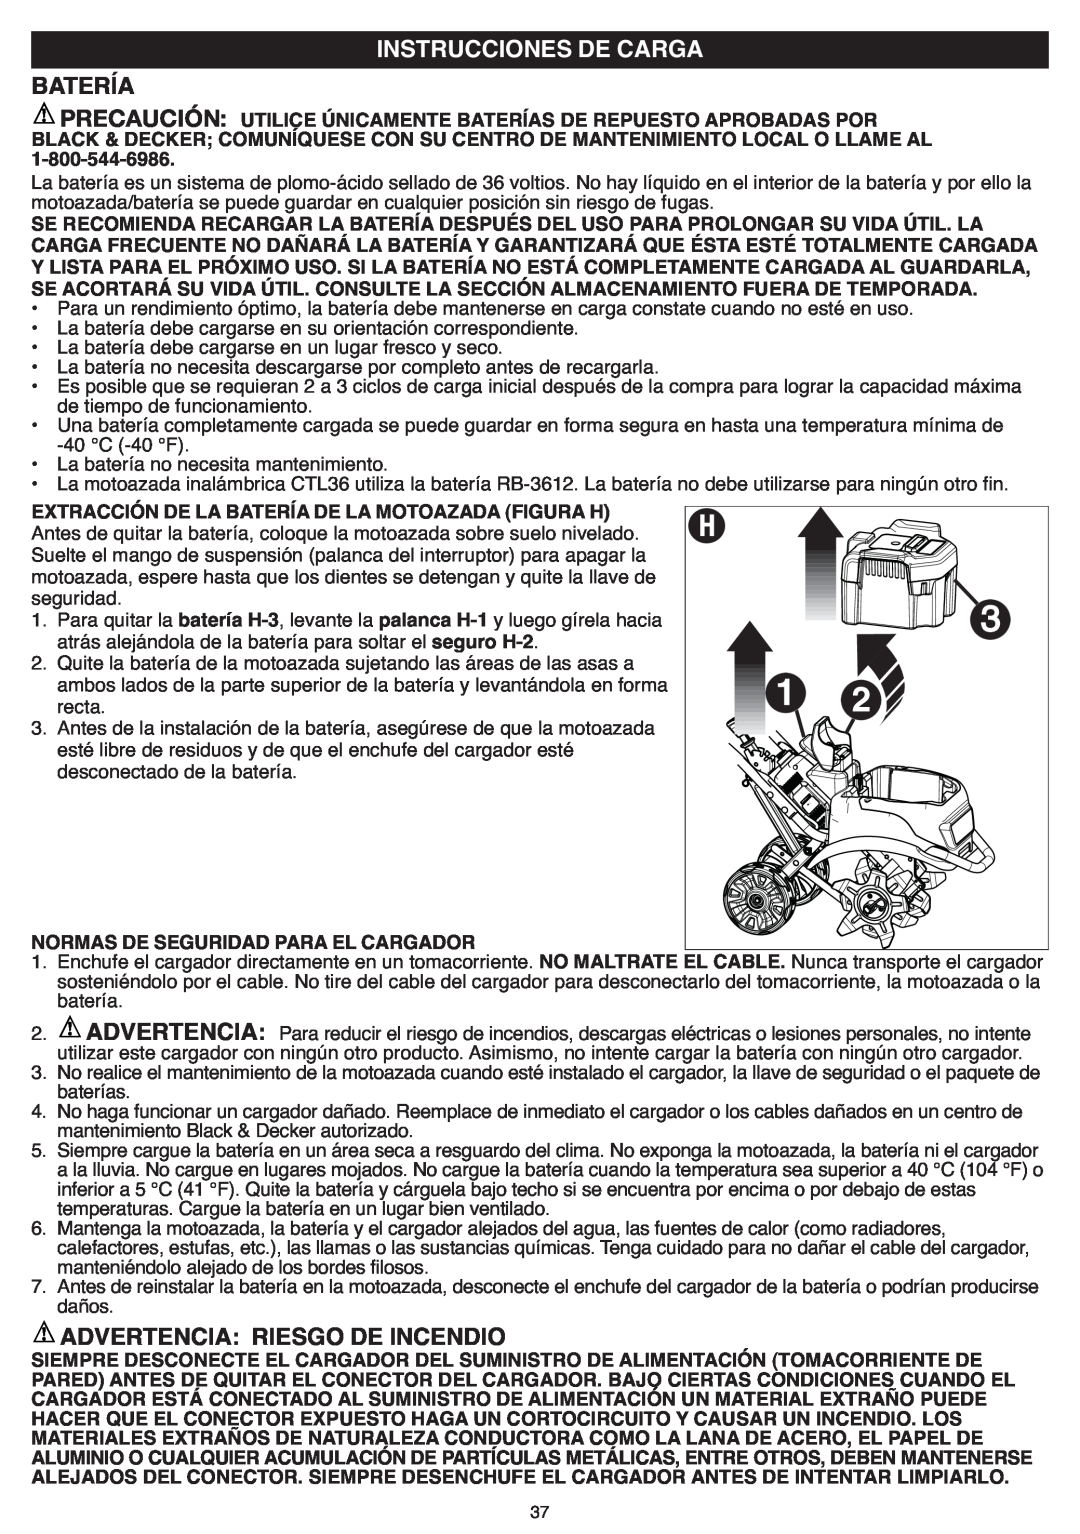 Black & Decker CTL36 Batería, Instrucciones De Carga, Precaución, Advertencia: Riesgo De Incendio, 1-800-544-6986 